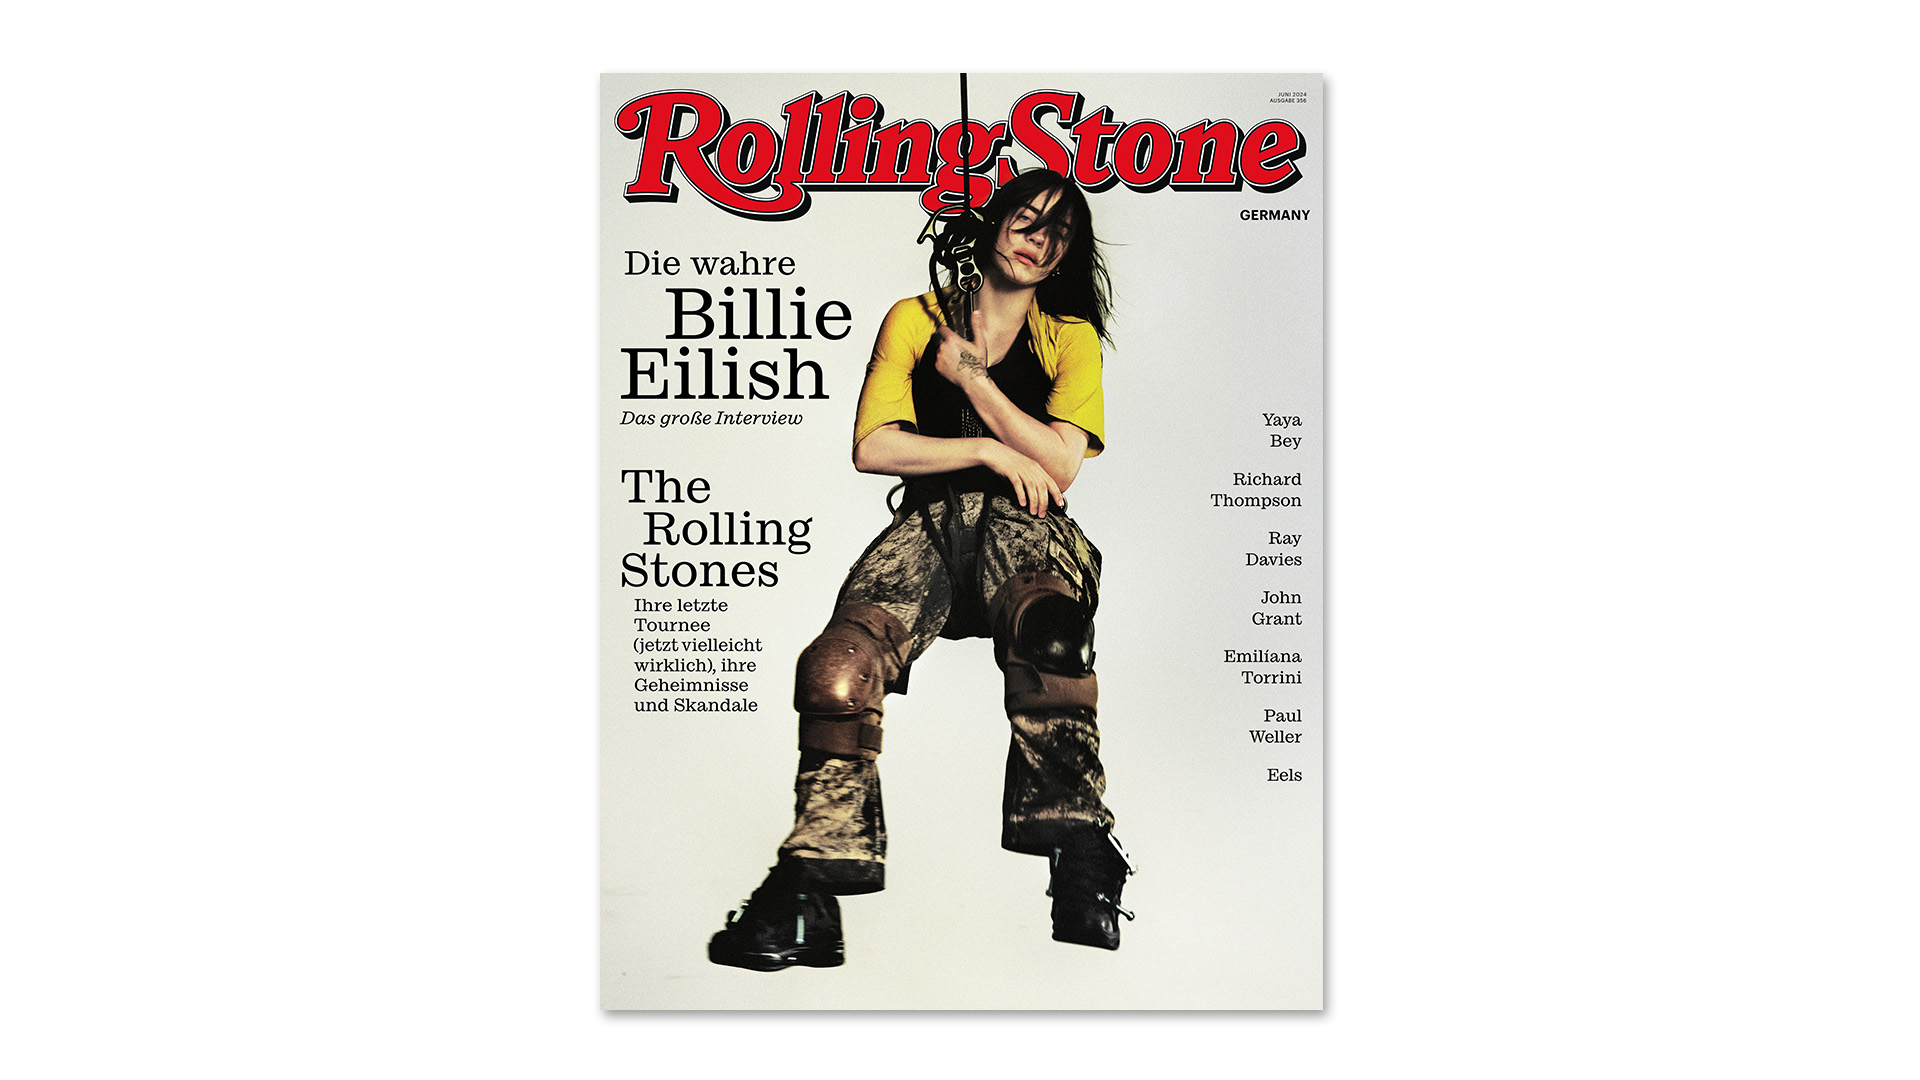 Billie Eilish ist unser Coverstar der Juni-Ausgabe